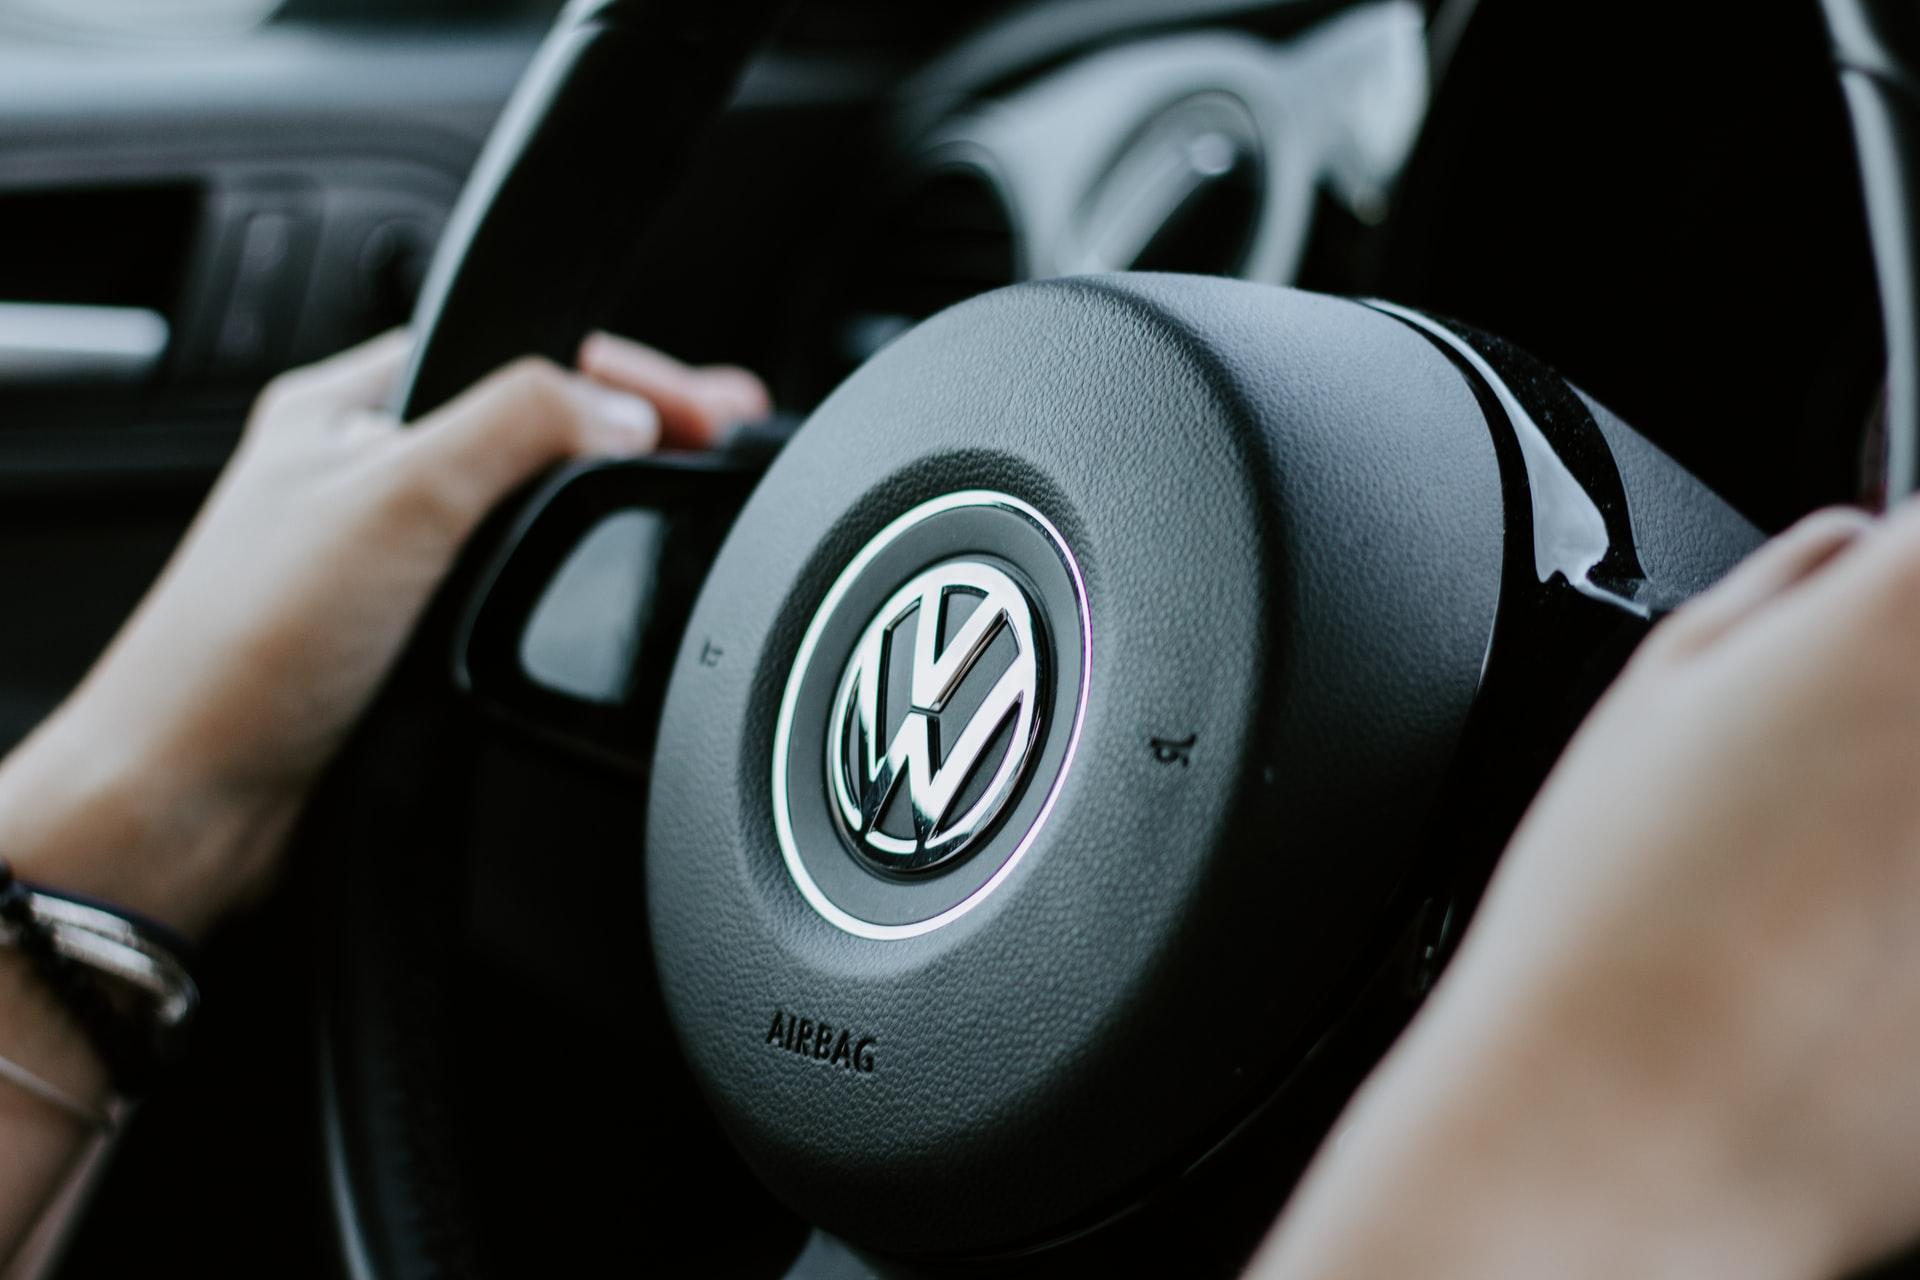 Volkswagen is making big commitments to EVs.